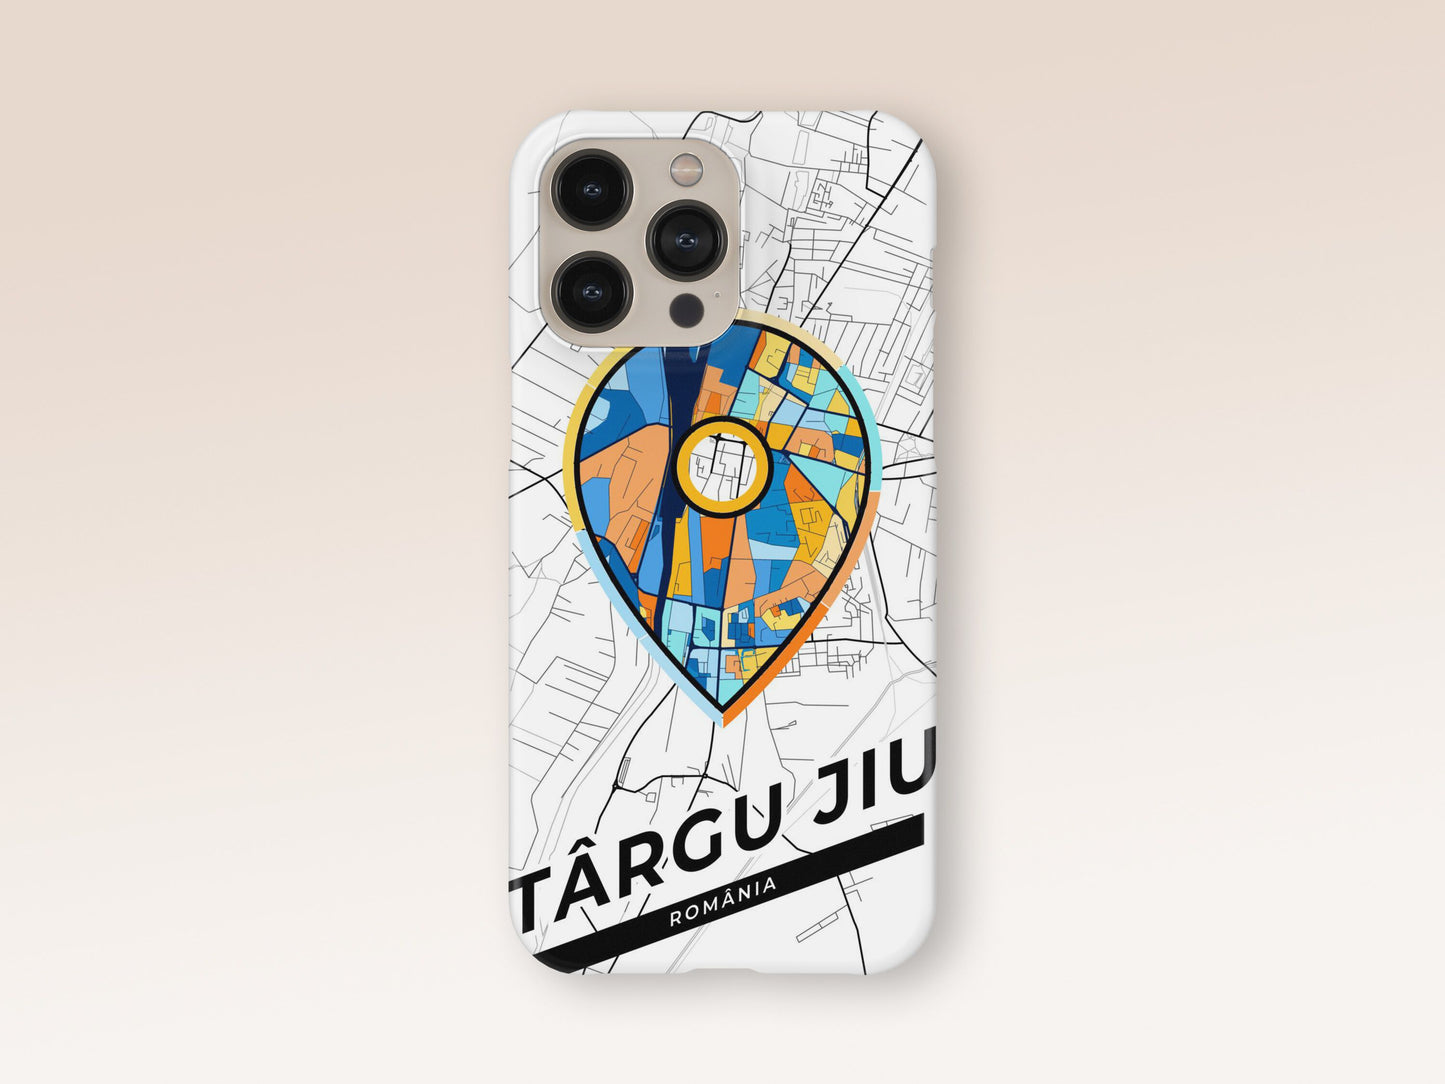 Târgu Jiu Romania slim phone case with colorful icon 1